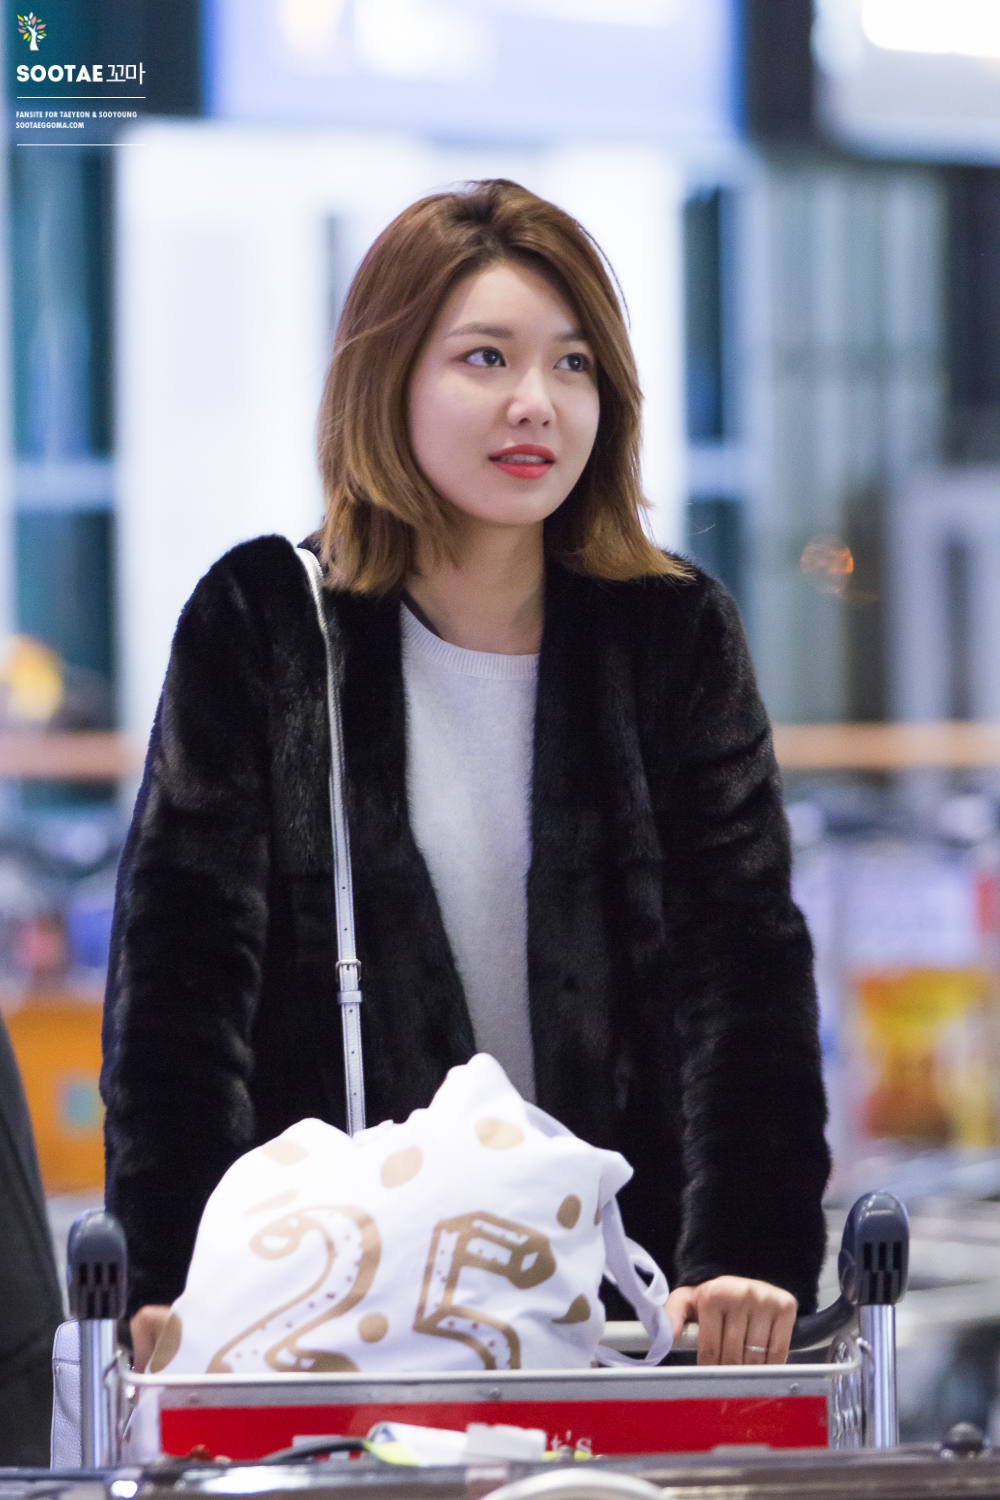 [PIC][12-03-2016]SooYoung trở về Hàn Quốc vào chiều nay 26021393316_3e77b065a6_o